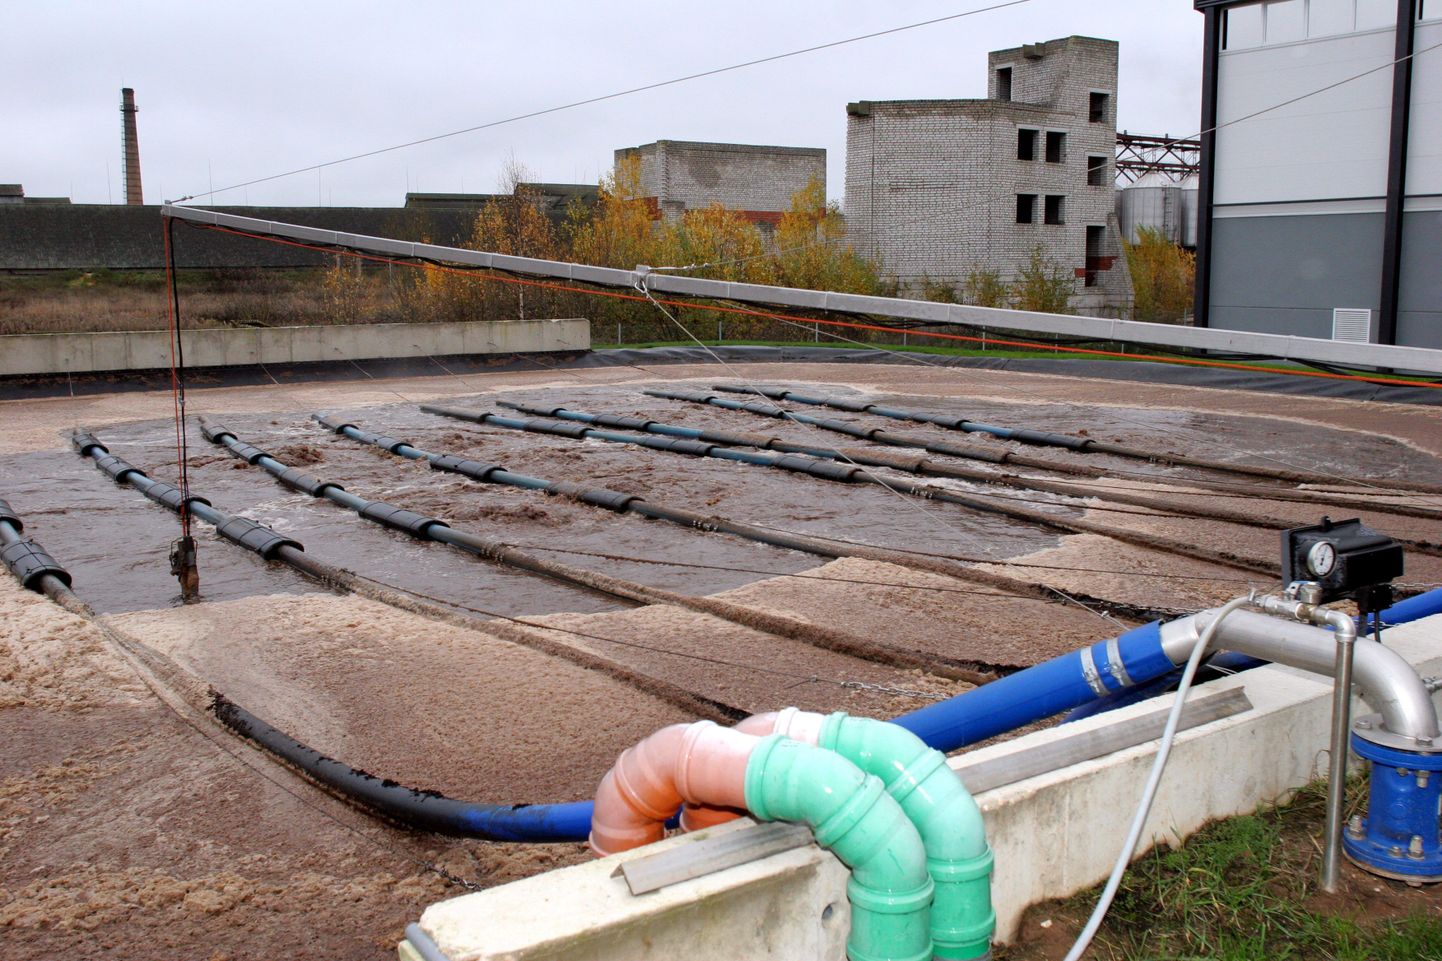 Väike-Maarja loomsete jäätmete käitlemise tehase reoveepuhasti rekonstrueeritakse 2011. aasta lõpuks.